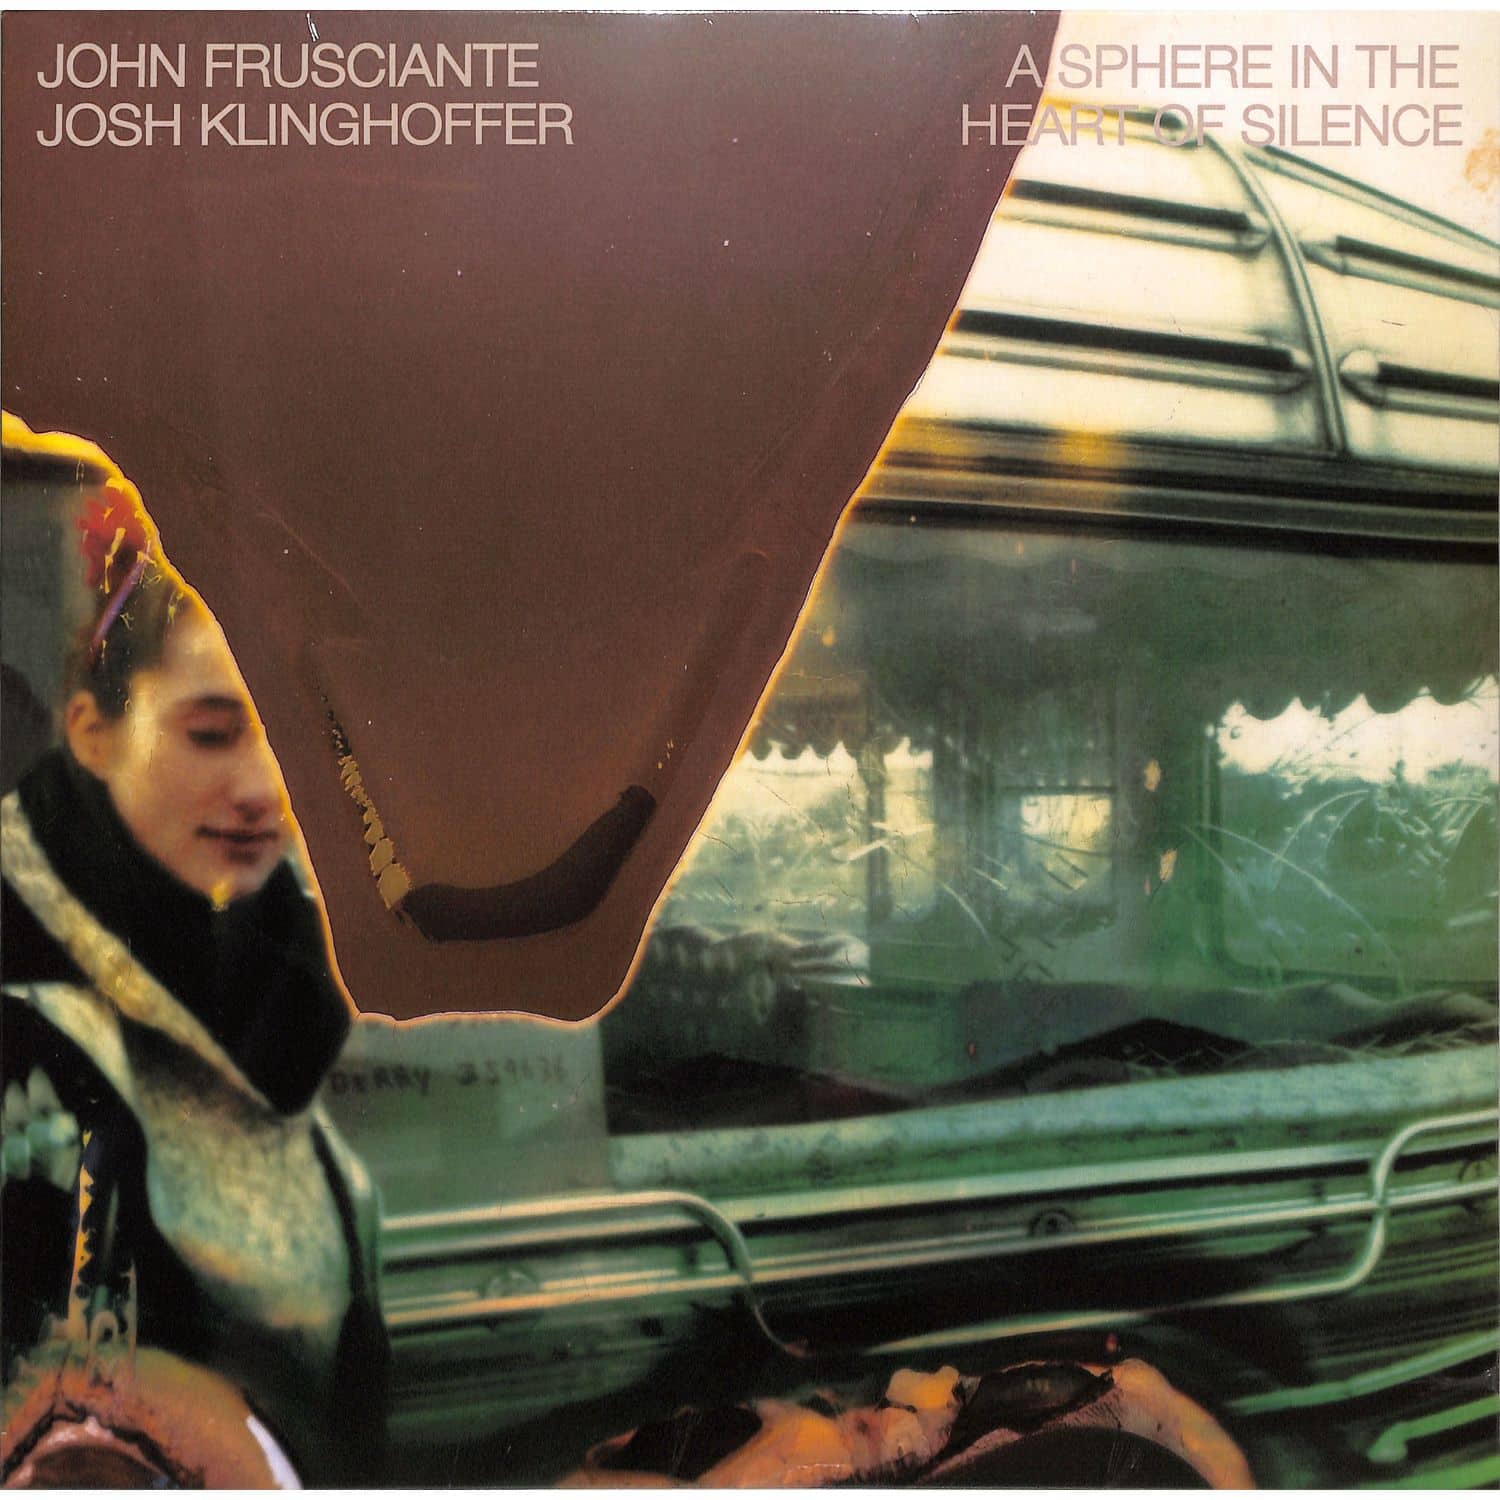 John Frusciante & Josh Klinghoffer - A SPHERE IN THE HEART OF SILENCE 